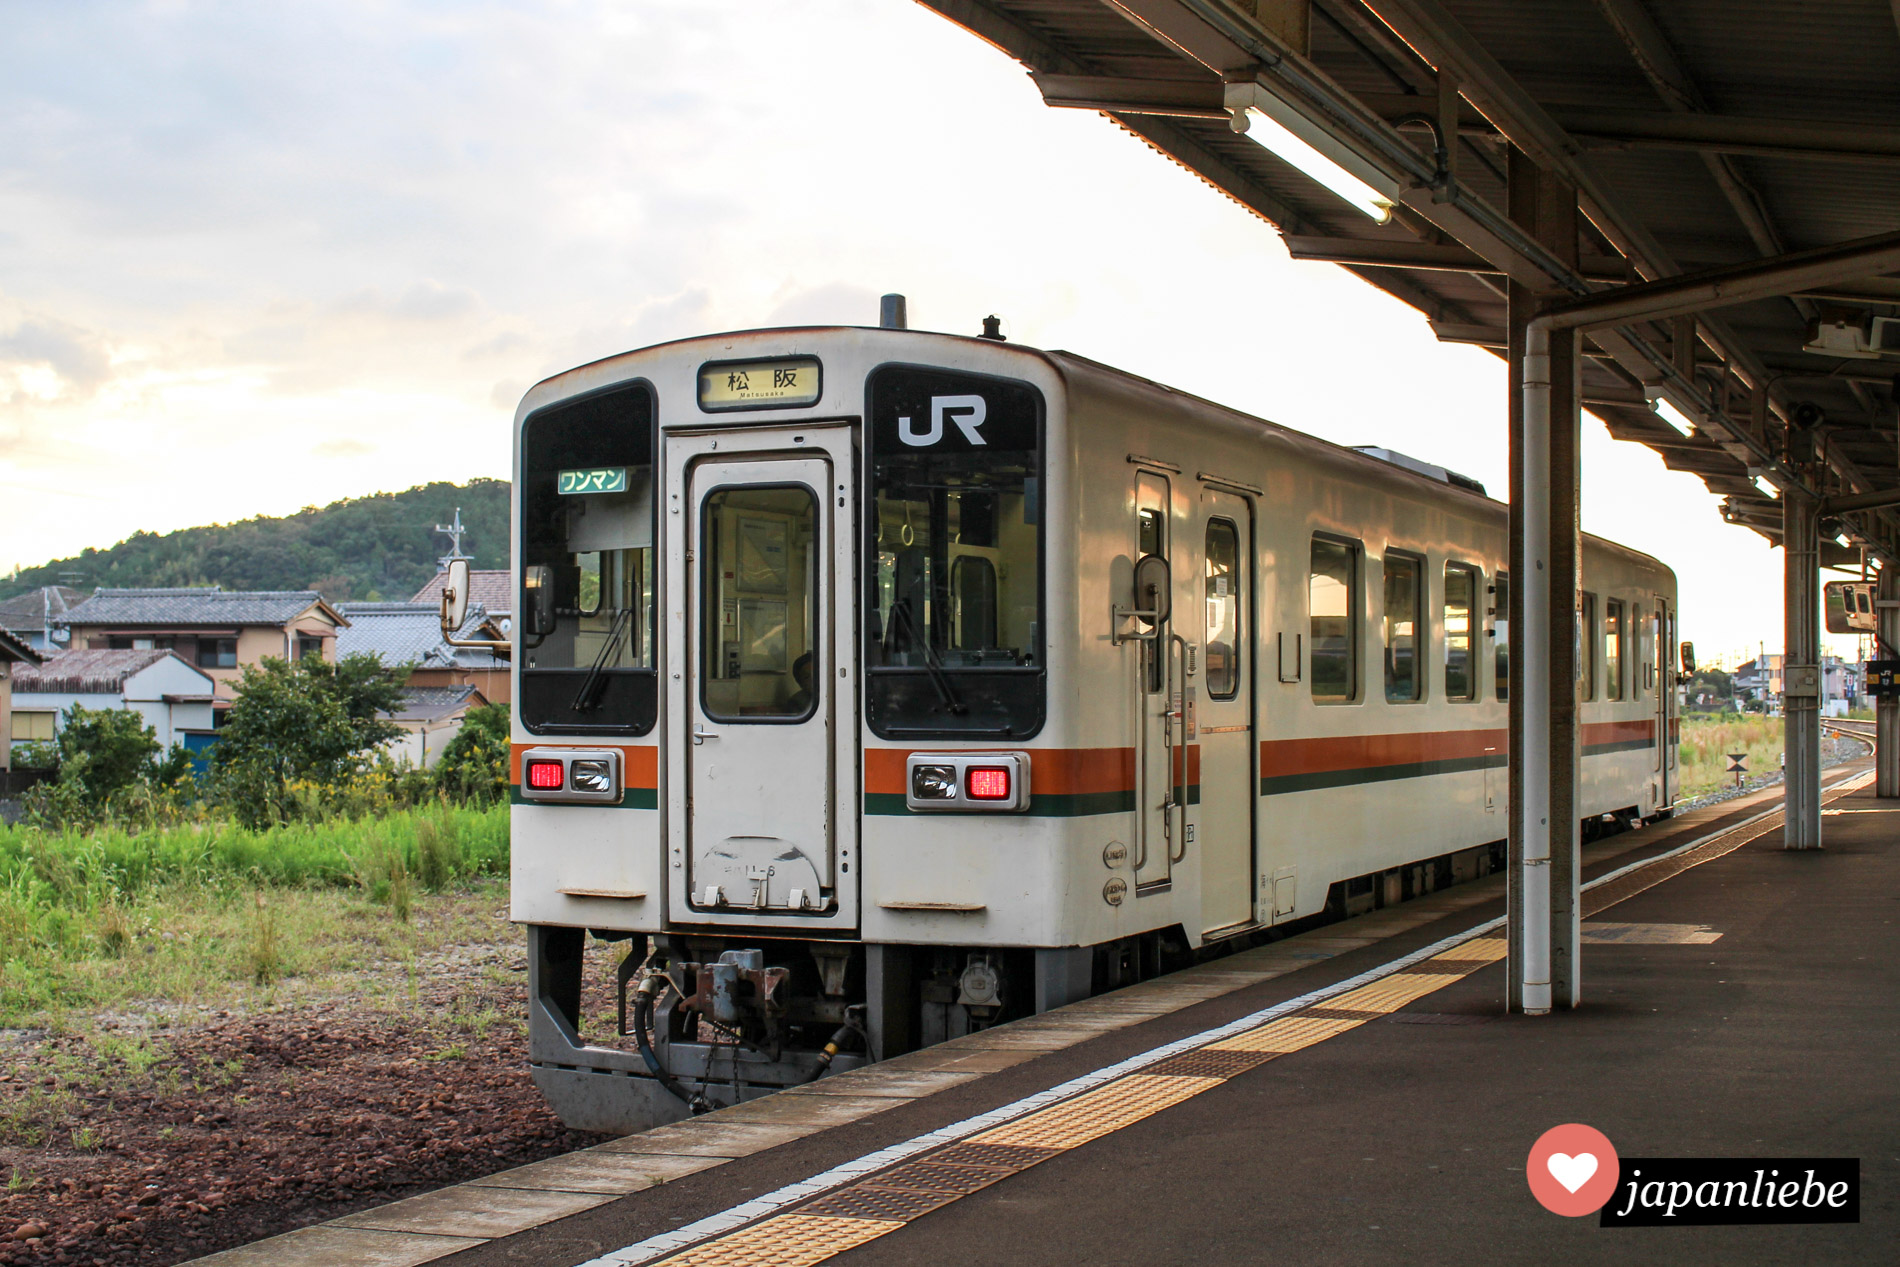 Ein sogenannter wanman, also Ein-Mann-Zug, am kleinen, ländlichen Bahnhof Futamino-Ura.